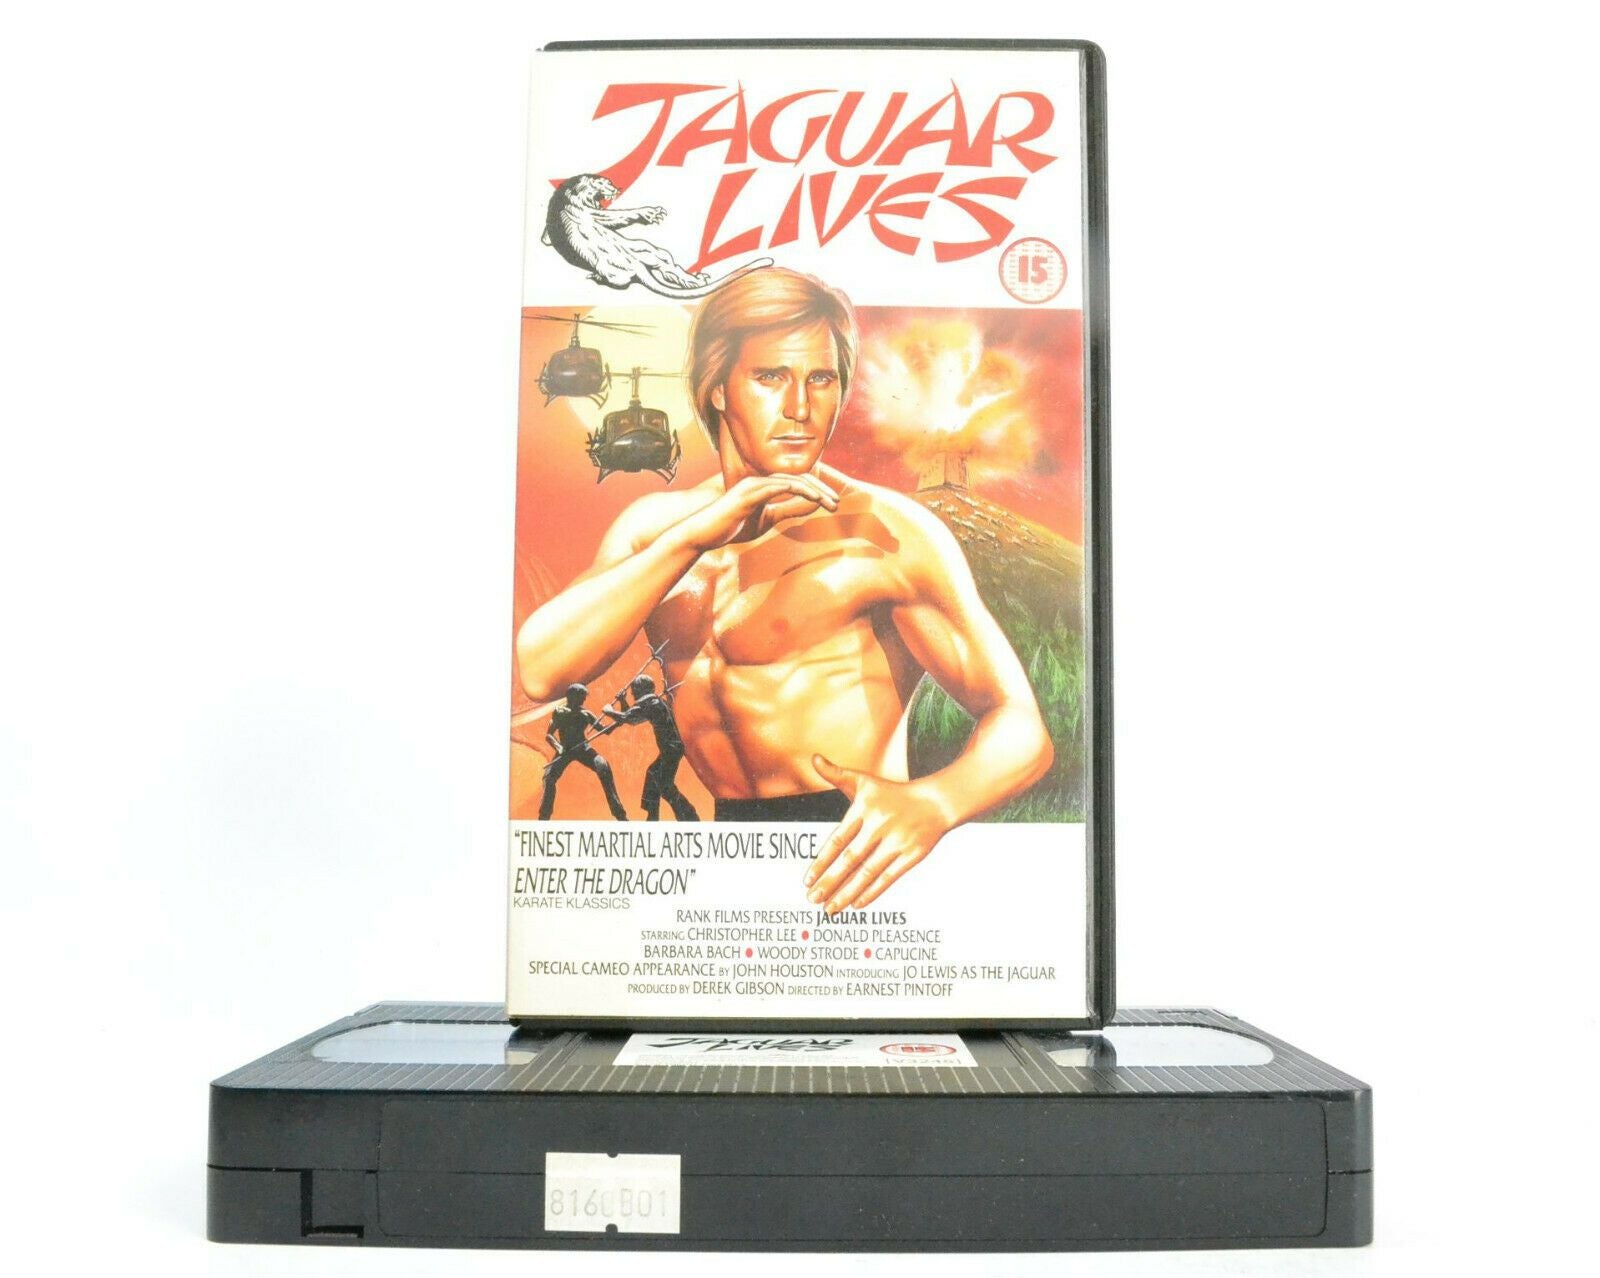 Jaguar Lives (1979) Spain/U.S.A - Secret Agents, Drugs - James Bond (18) - VHS-